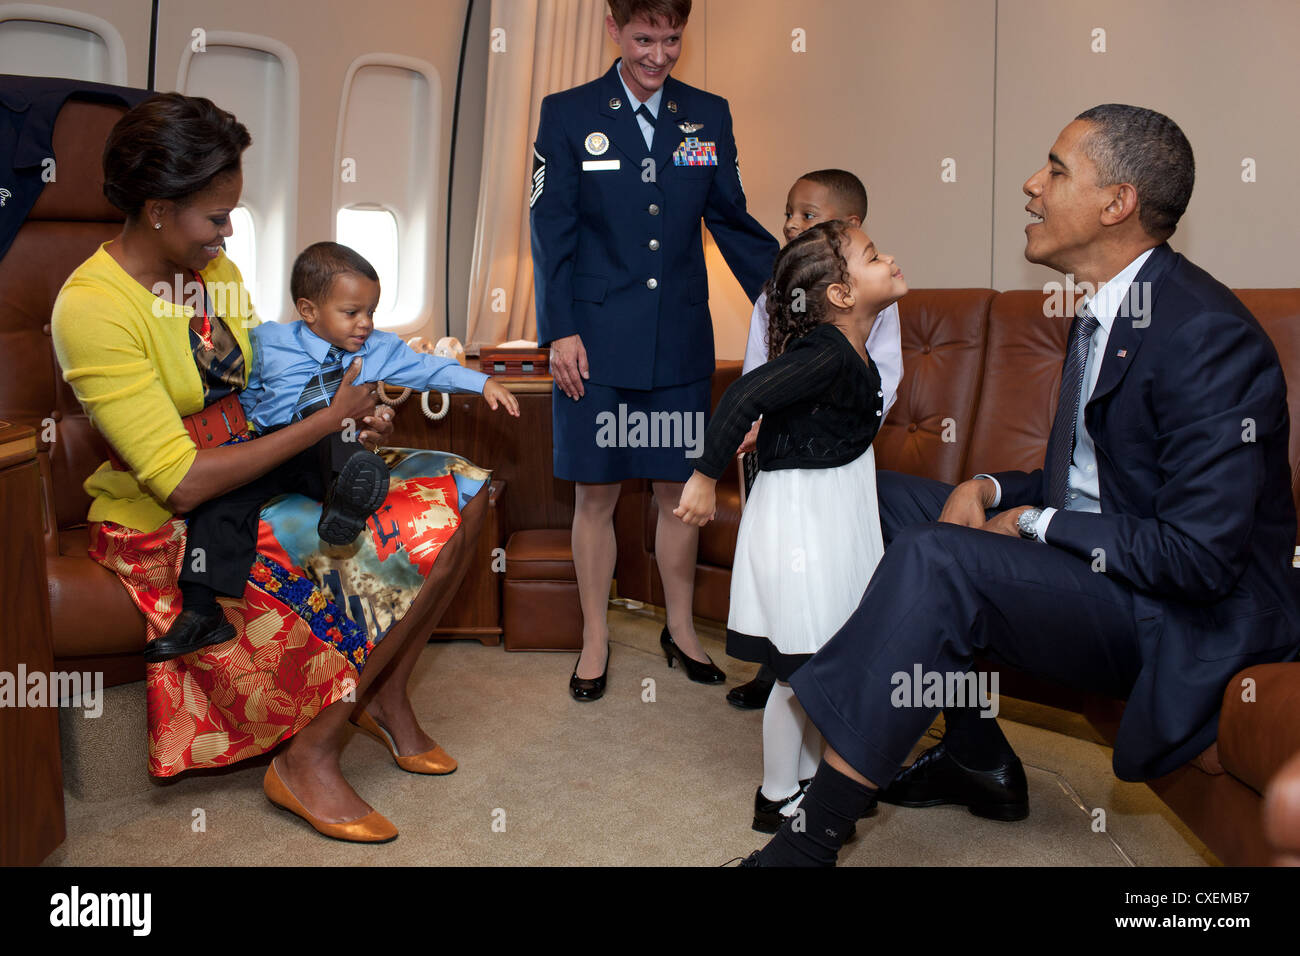 US-Präsident Barack Obama und First Lady Michelle Obama begrüßt die Familie Senior Master Sergeant Roland Paramore (nicht abgebildet) 19. September 2011 an Bord der Air Force One vor dem Abflug auf dem Weg nach New York. Stockfoto